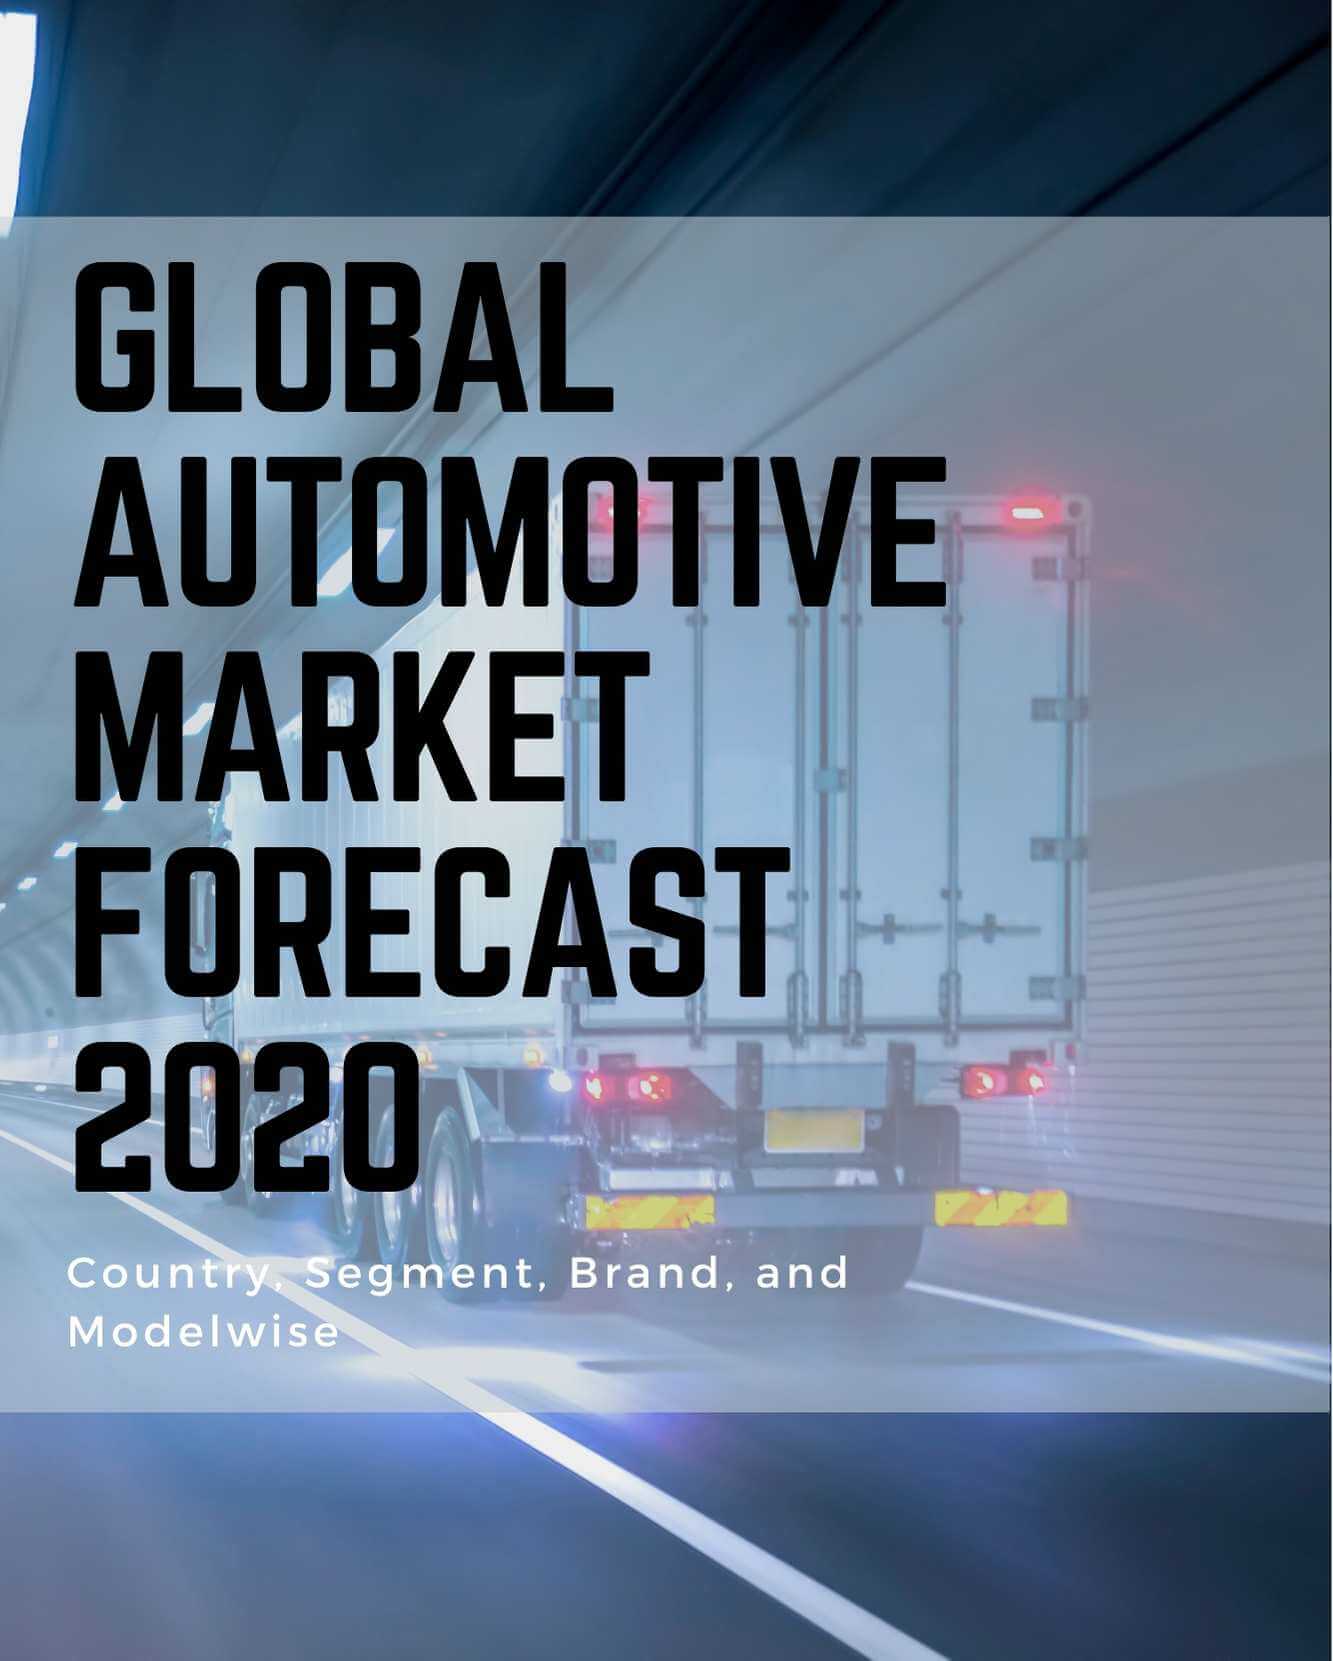 Global Automotive Market Forecast 2020 Analysis